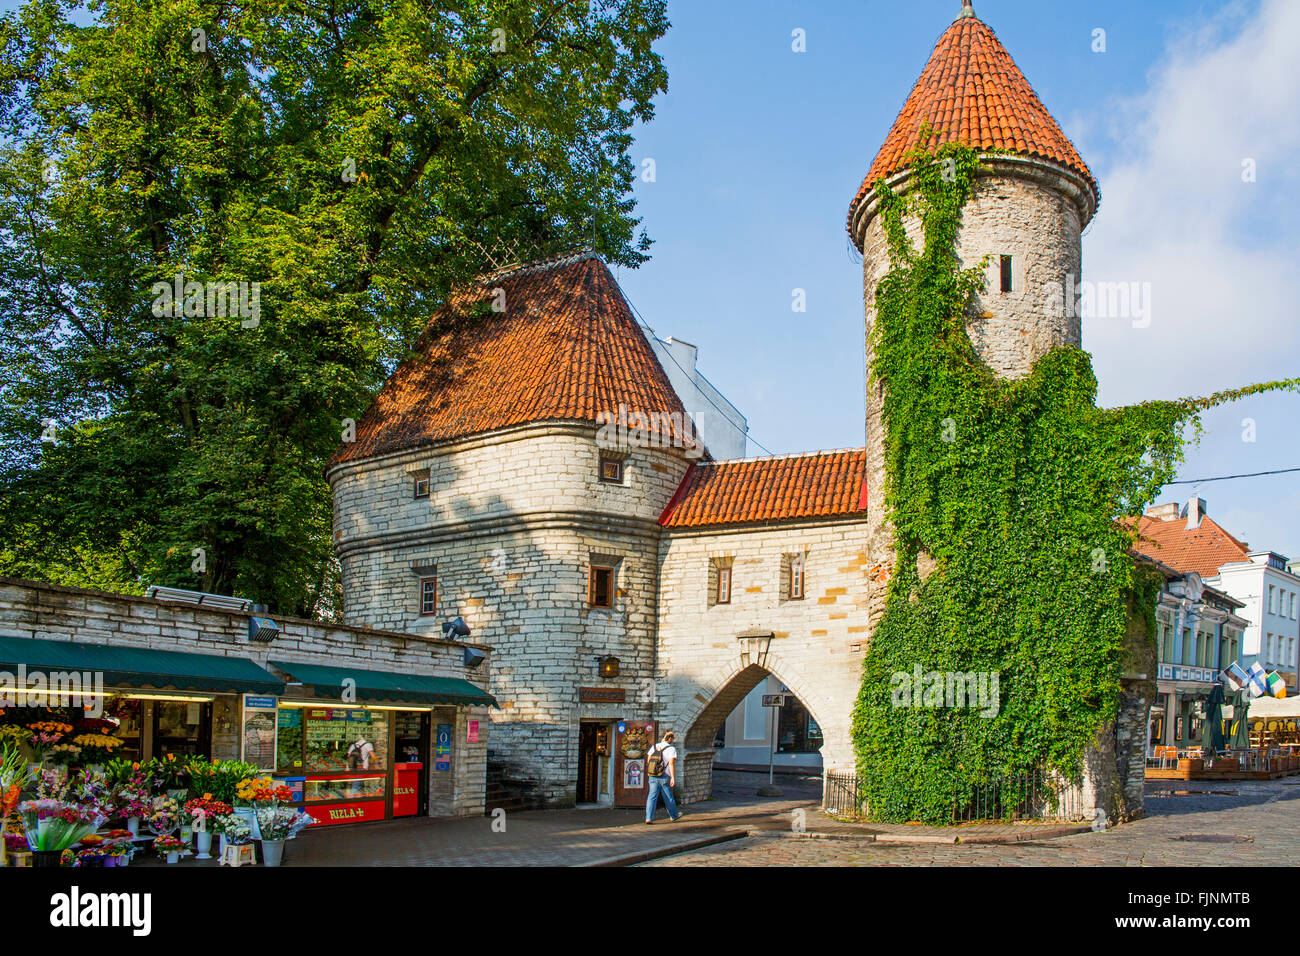 Géographie / billet, l'Estonie, Tallinn, ancienne porte de la ville, la Porte Viru, entrée à la ville basse, Additional-Rights Clearance-Info-Not-Available- Banque D'Images